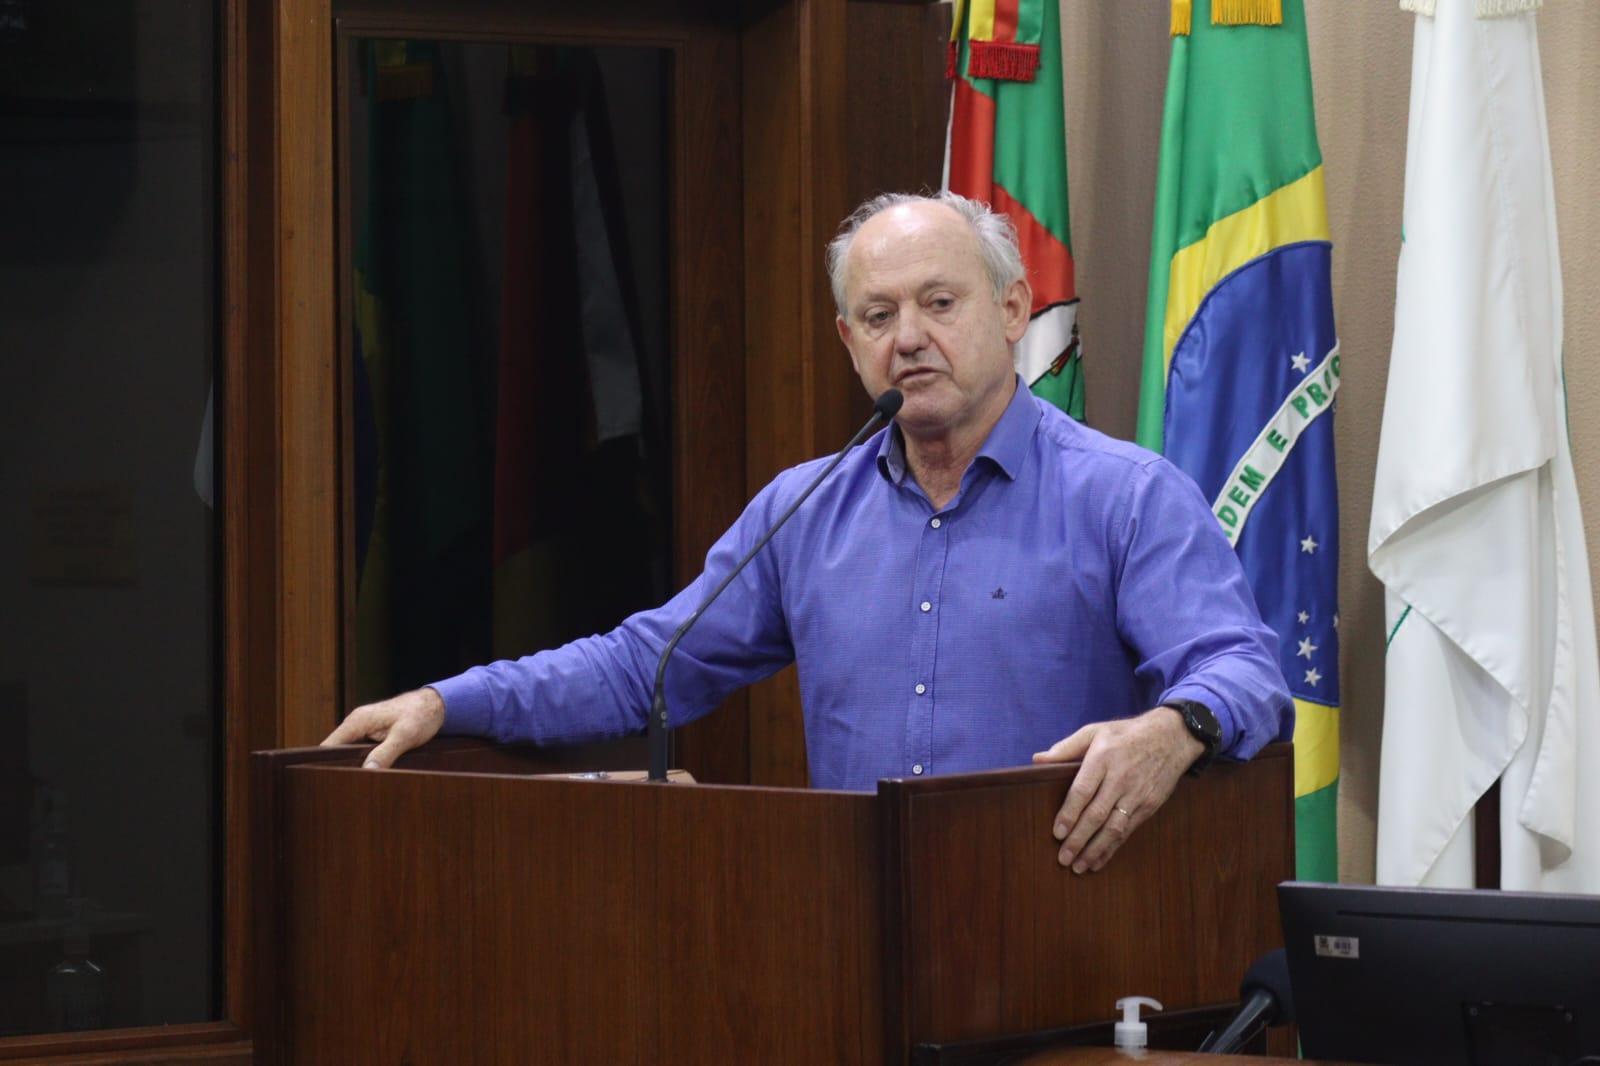 Olmir Cadore aponta problemas na saúde pública e pede união regional